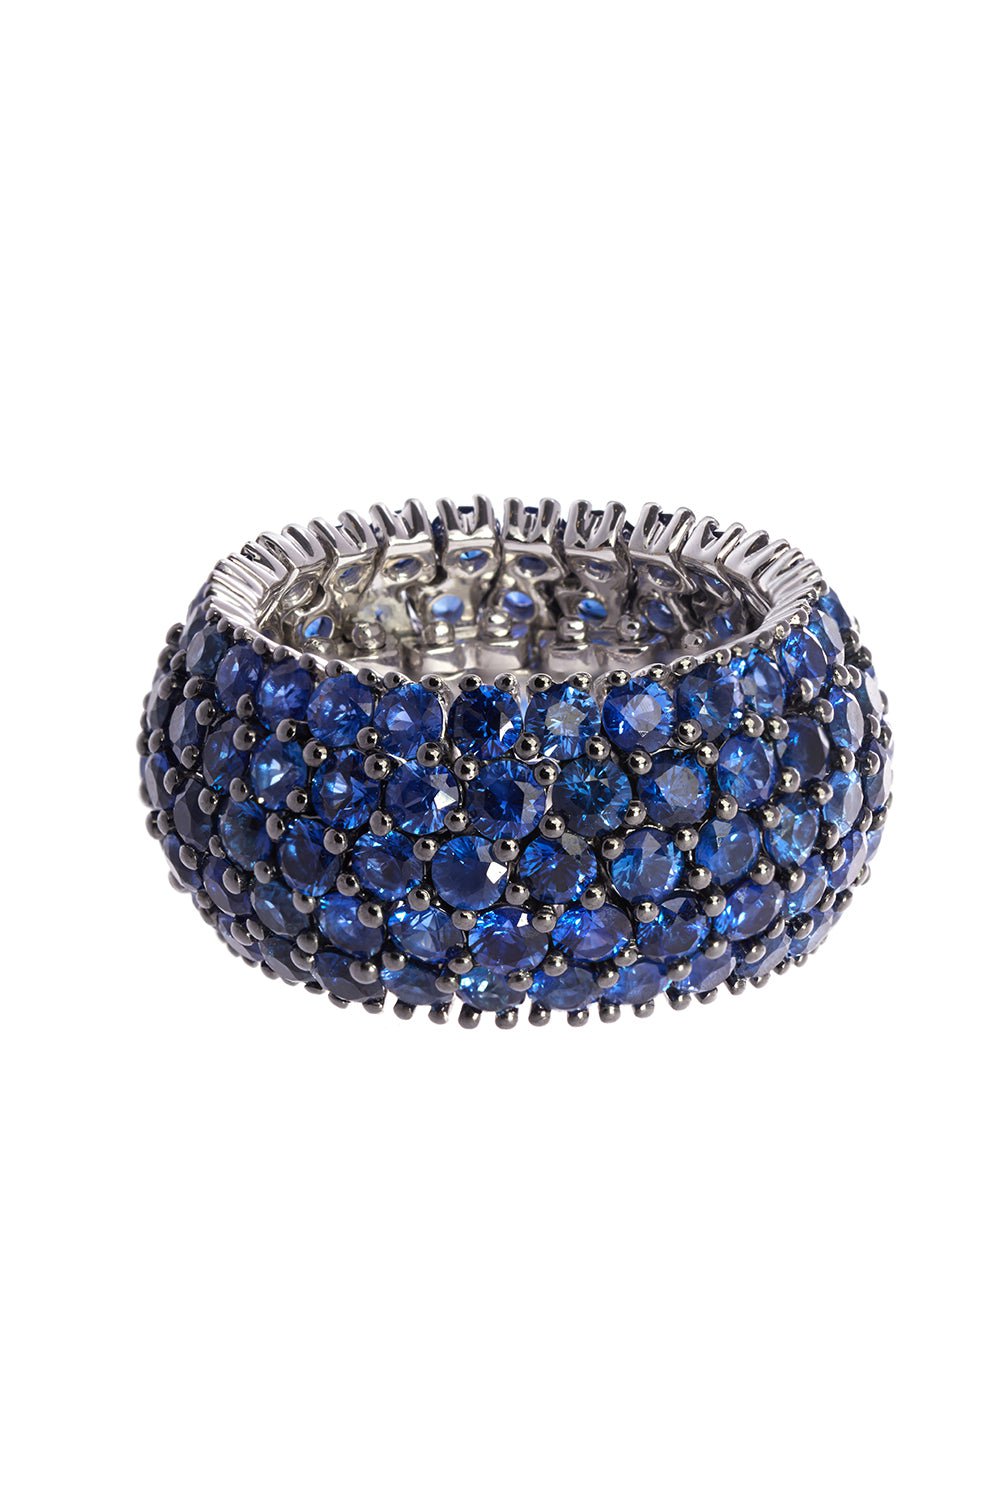 SIDNEY GARBER-Blue Sapphire Flex Ring-WHITE GOLD